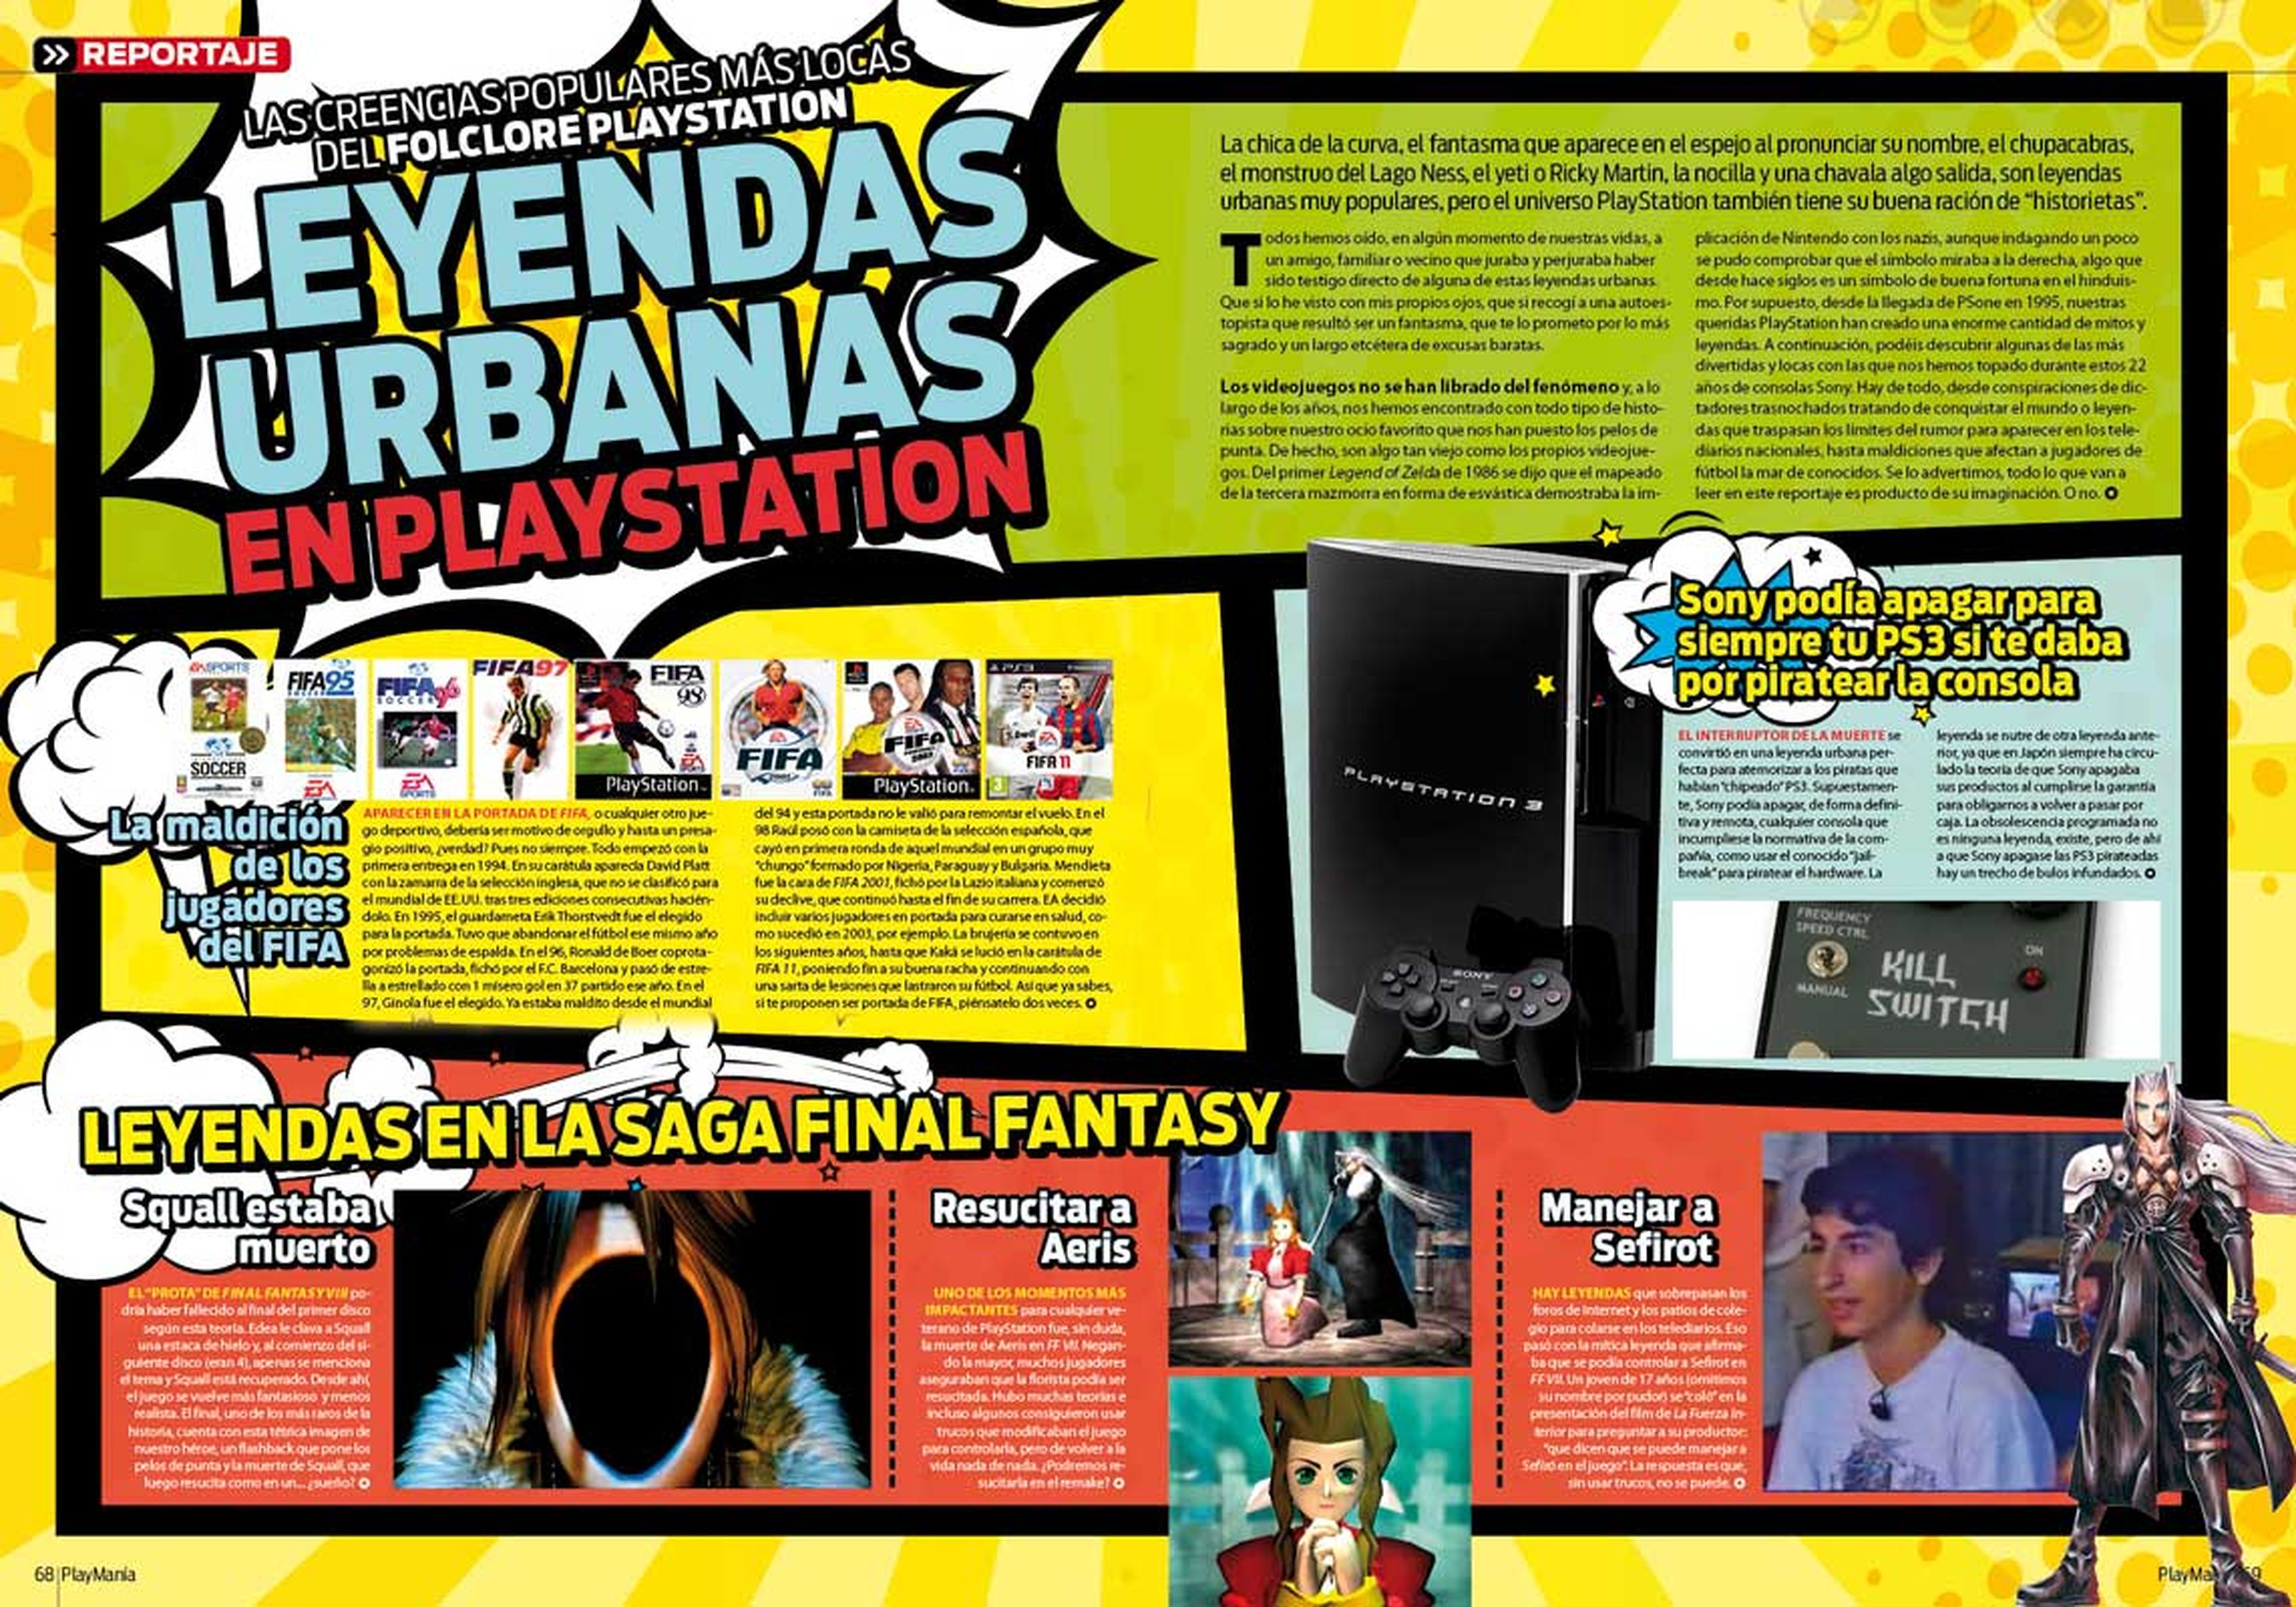 Leyendas Urbanas PlayStation en Playmania 223